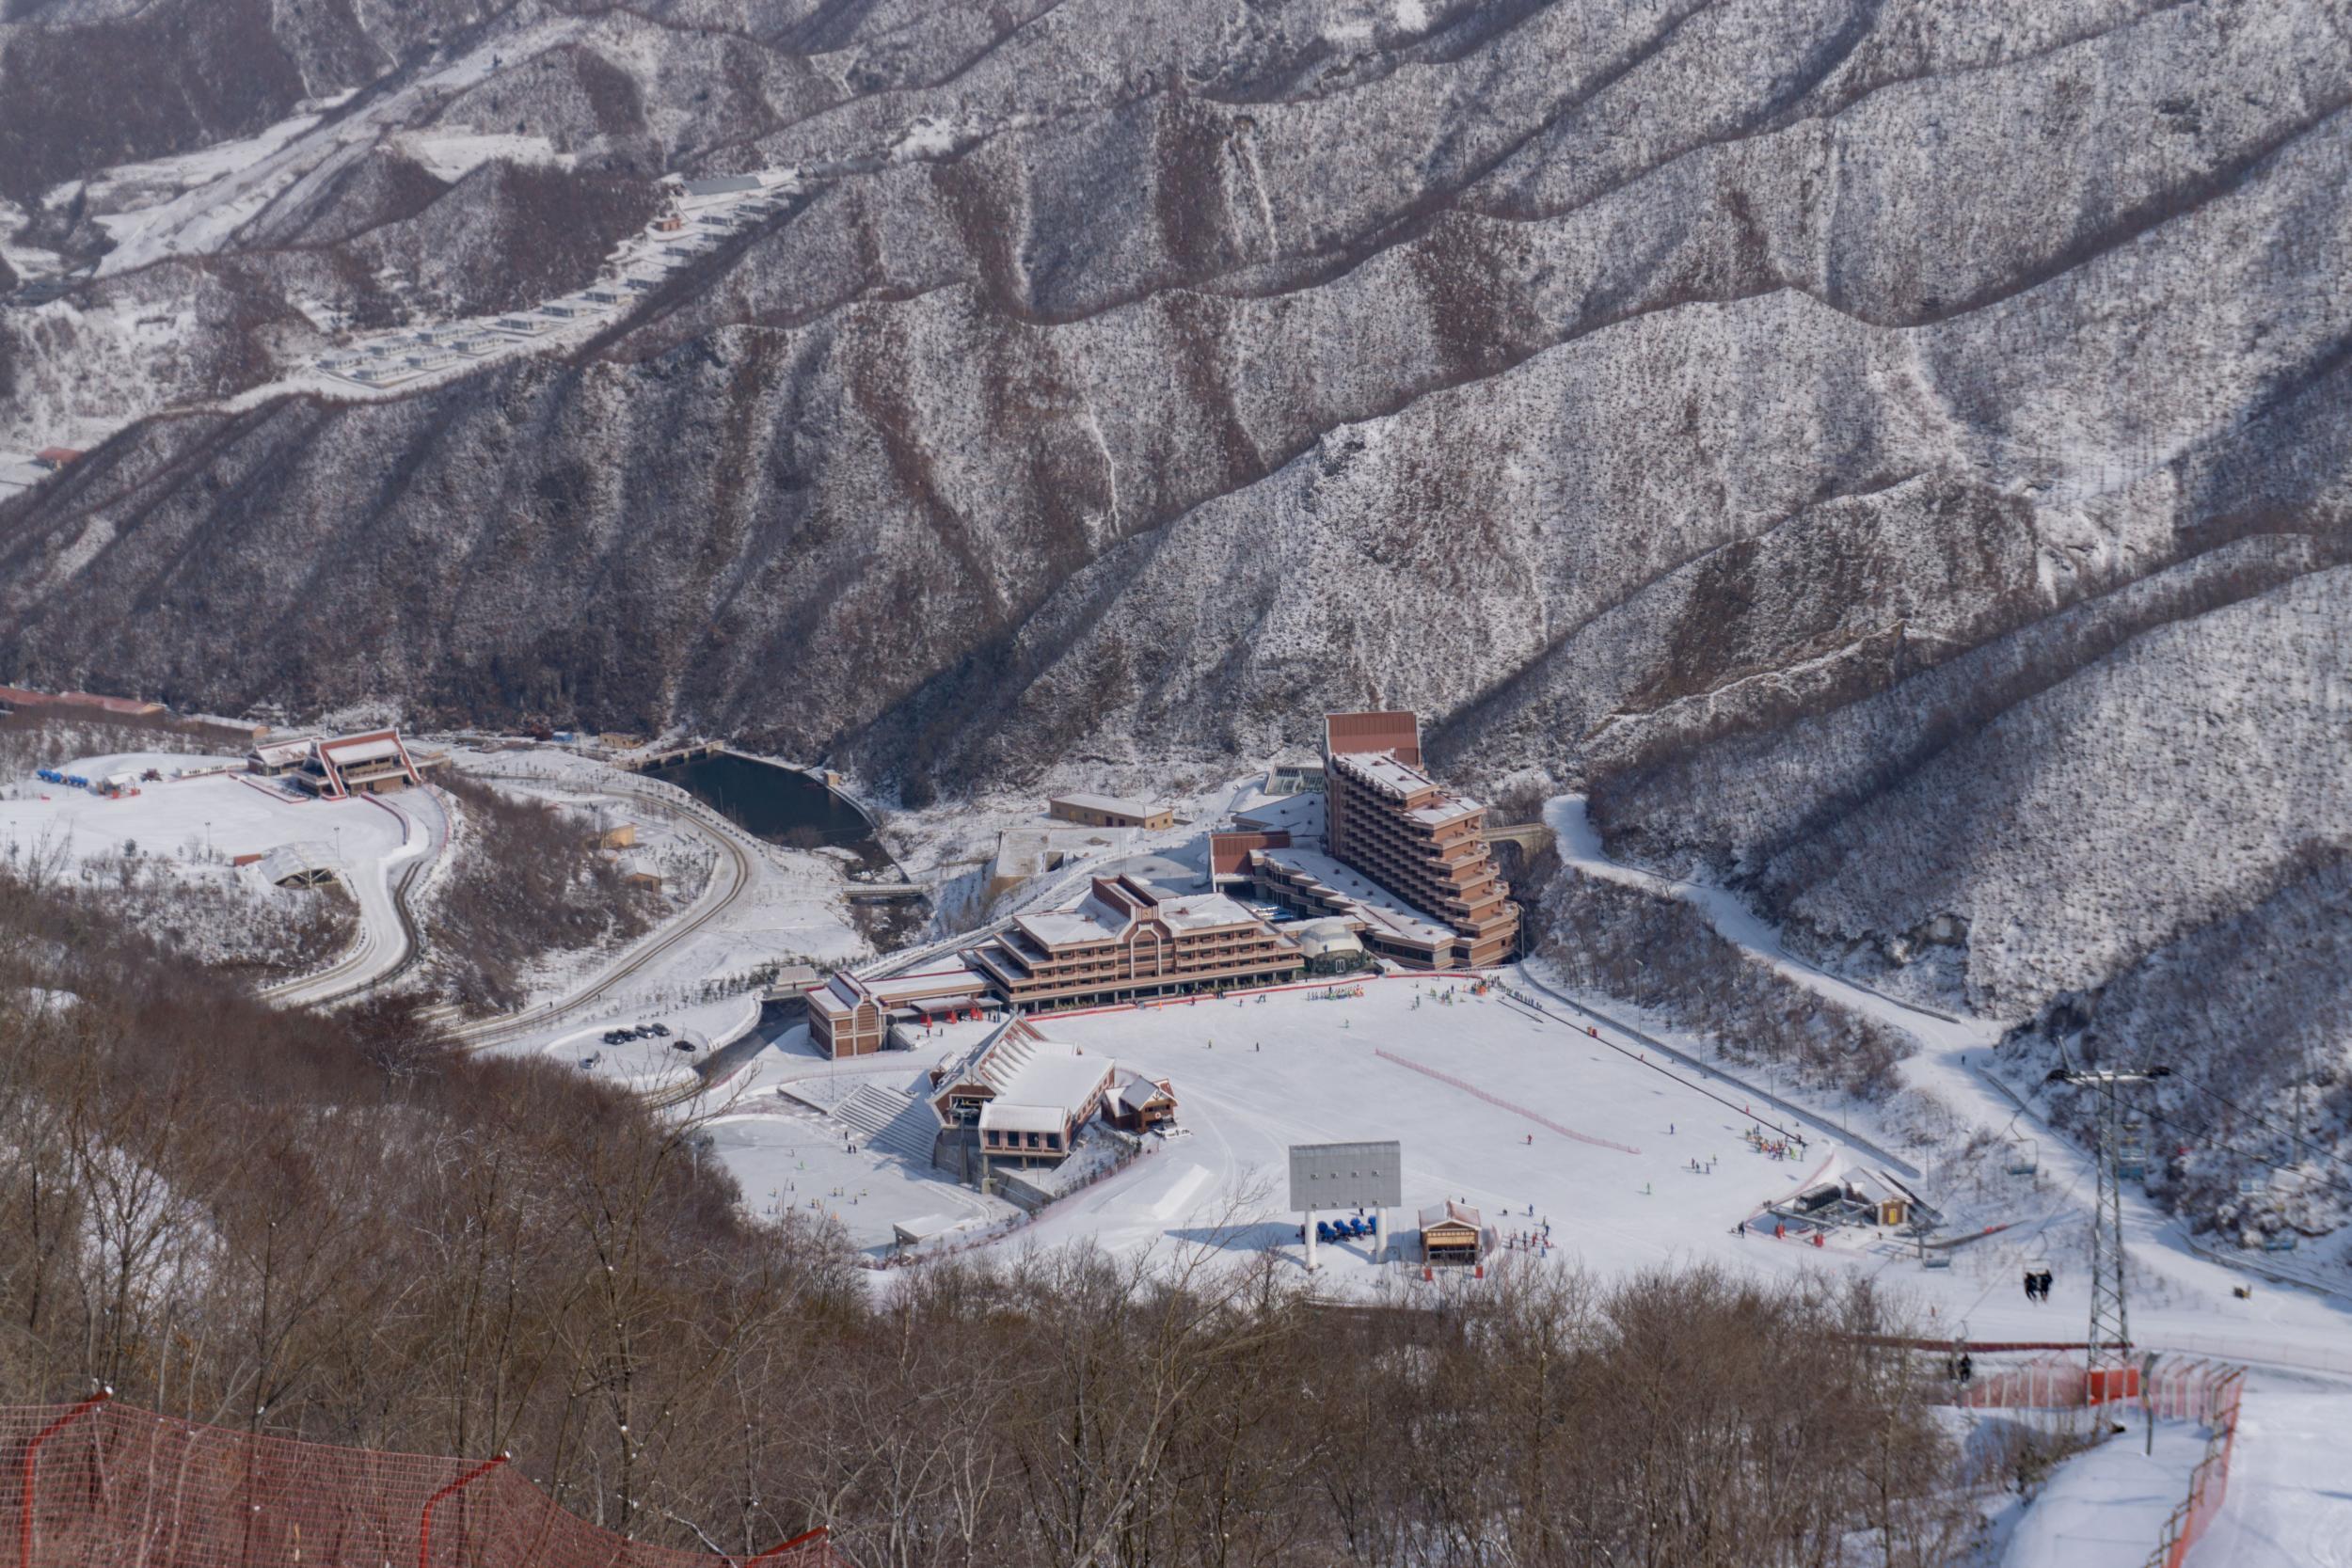 Masikryong ski resort was built in 2013